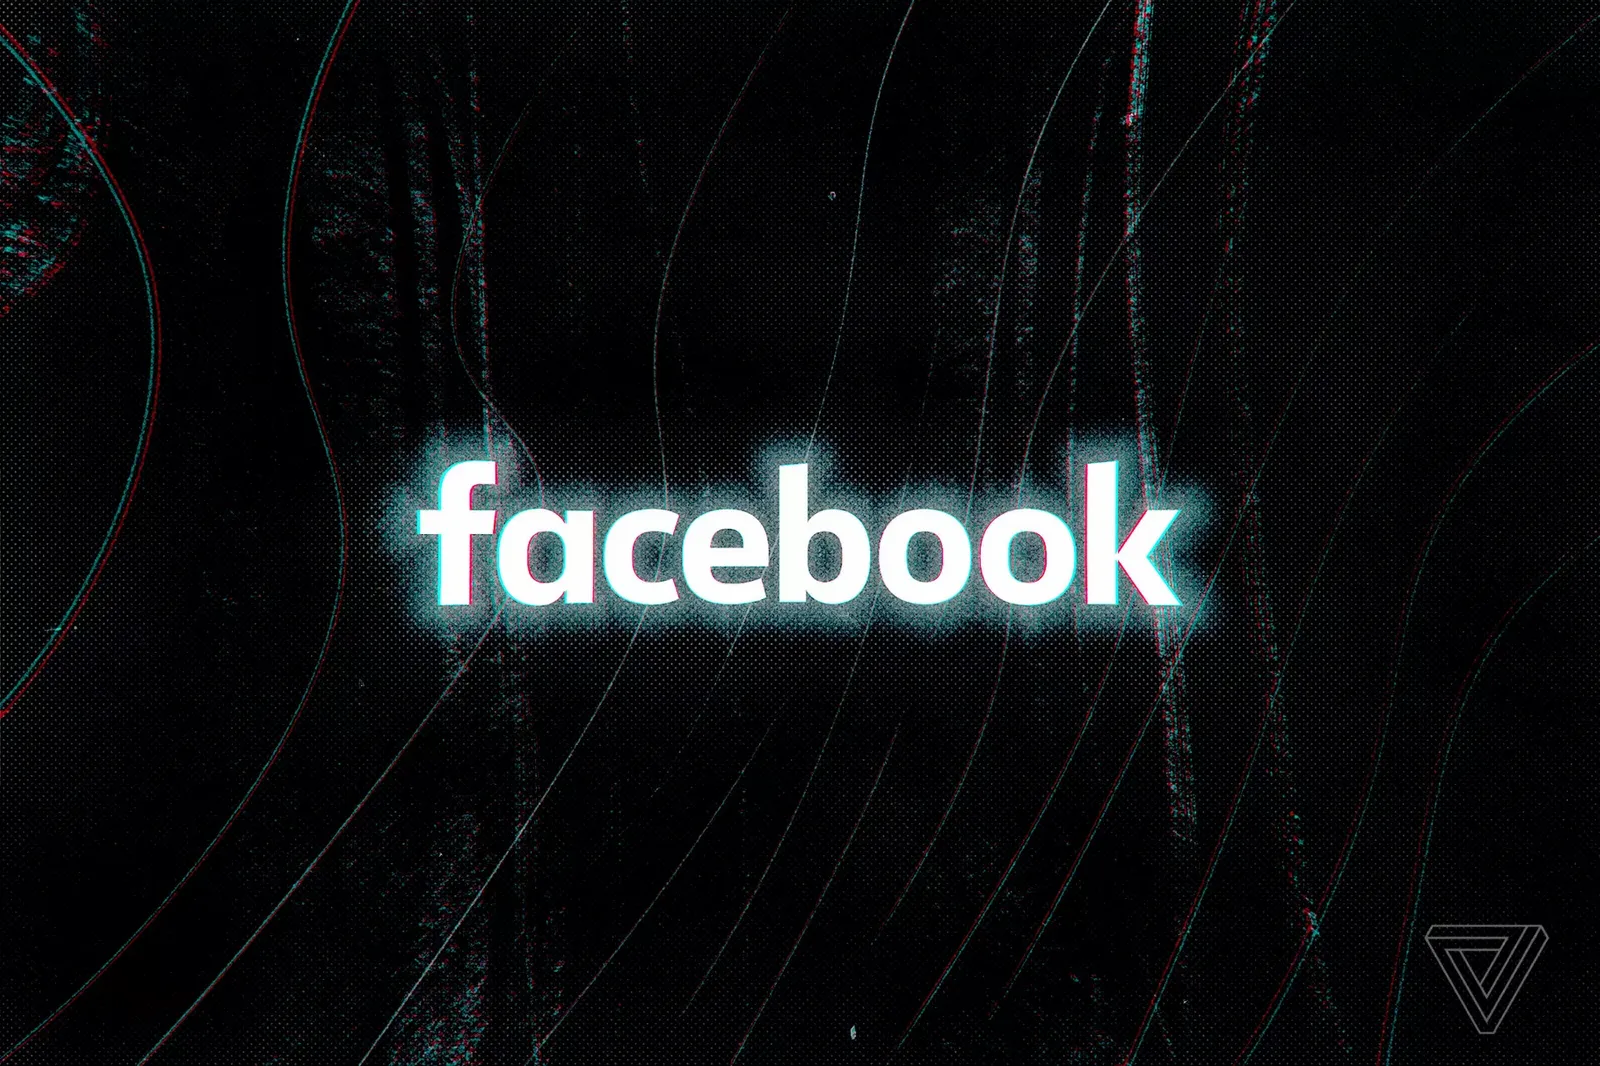 Facebook ha sido acusado de discriminación por el gobierno de los Estados Unidos